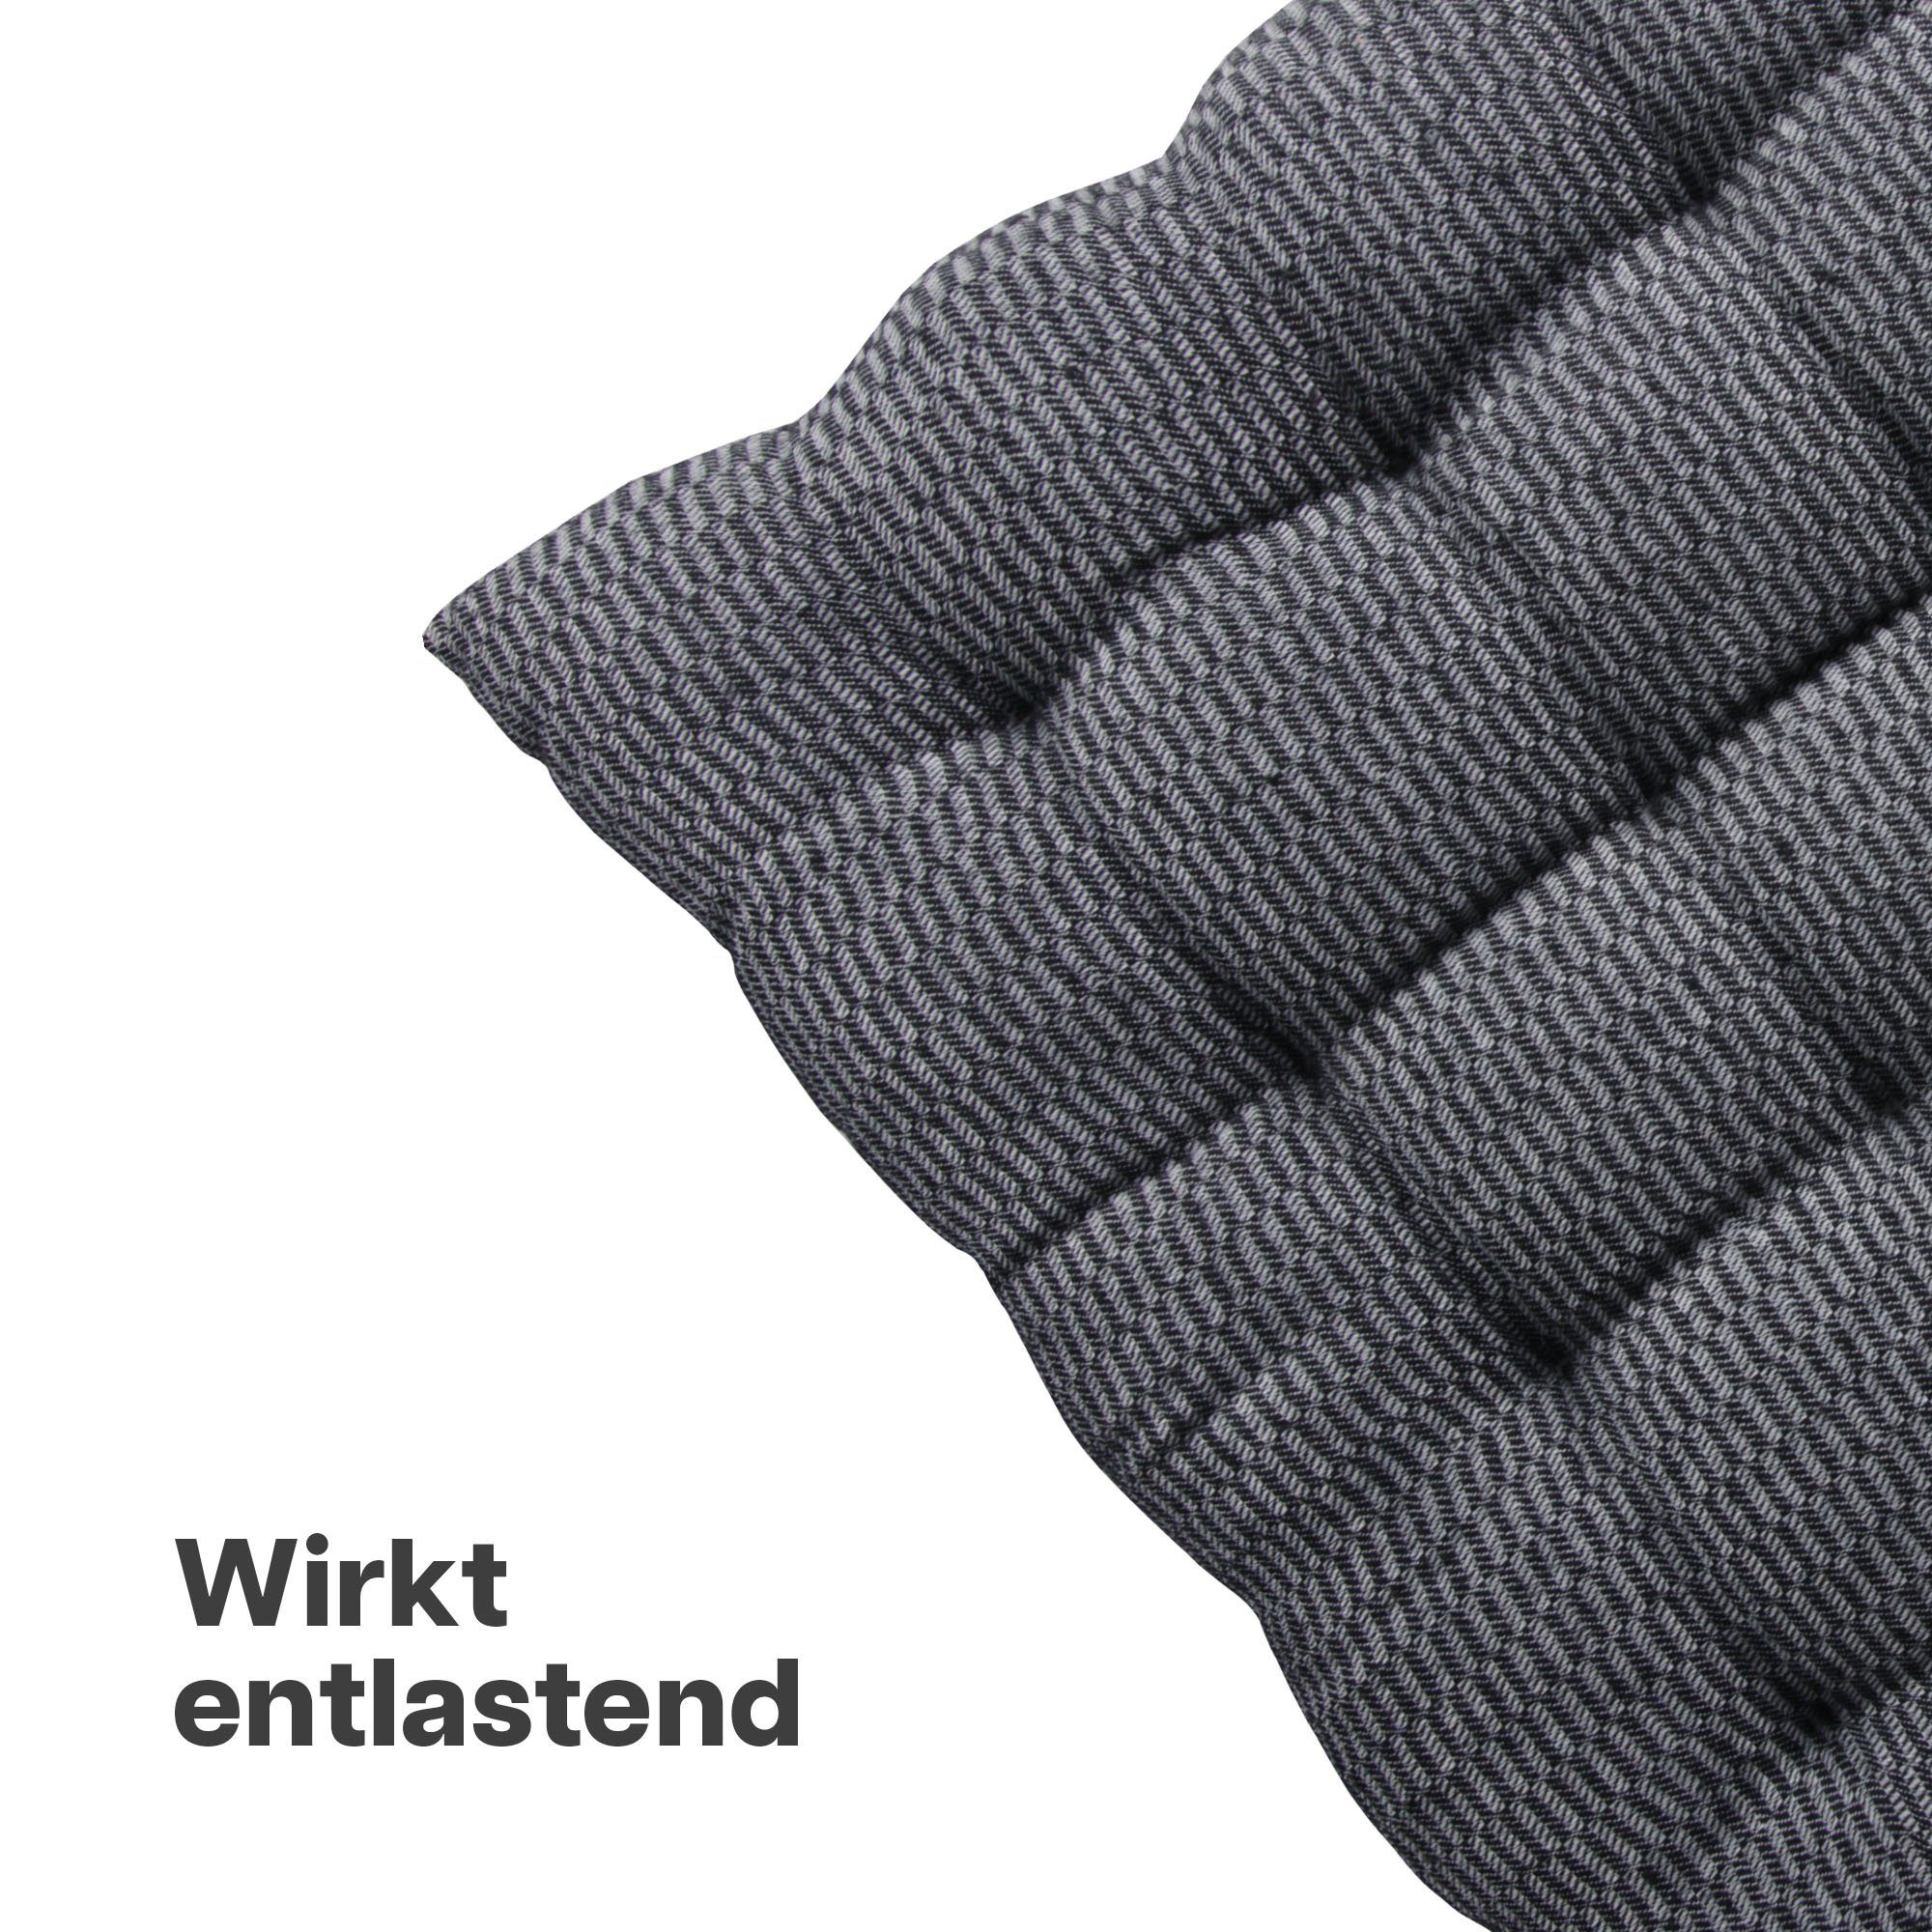 Baumwolle Grau Hochwertiges - (1 4 40x40cm, Stuhlkissen Stuhlauflage - Bestlivings Polsterkissen Stück) Sitzkissen